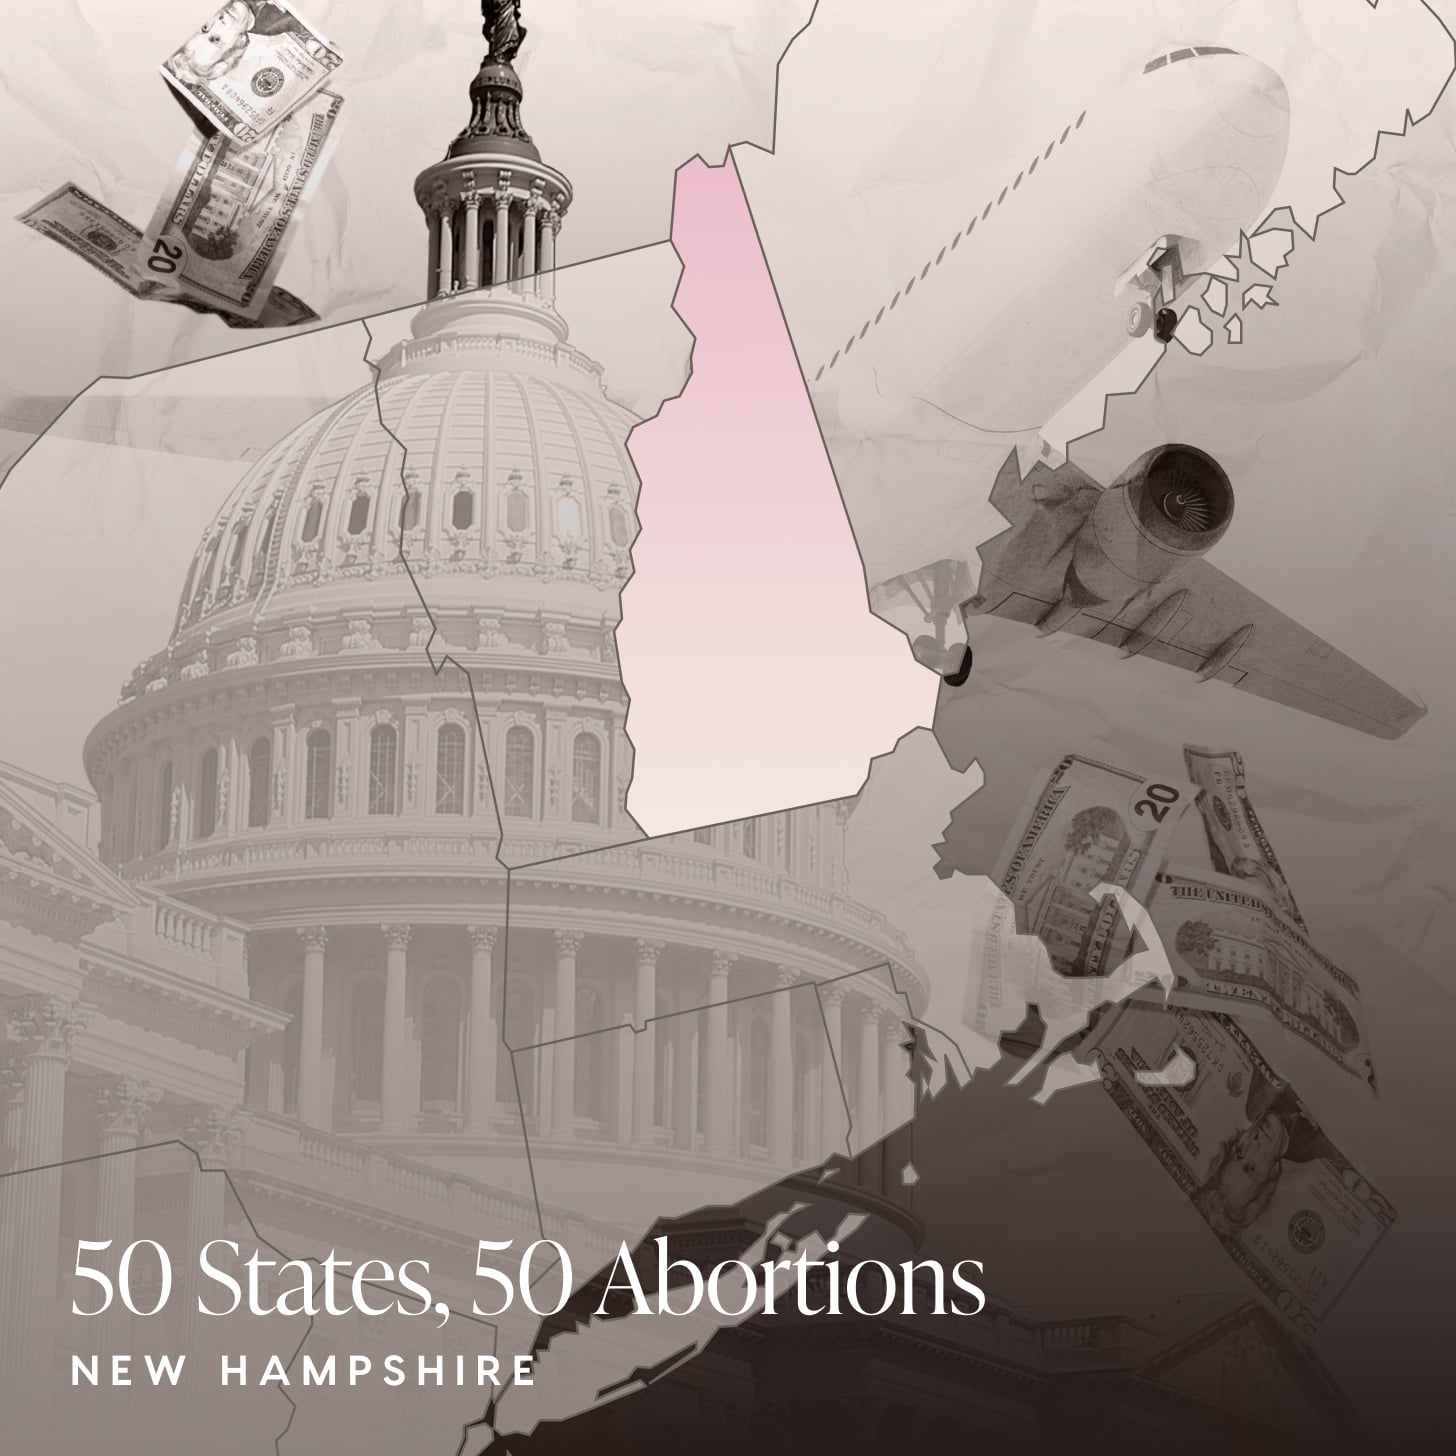 耻辱的堕胎的故事,新罕布什尔州